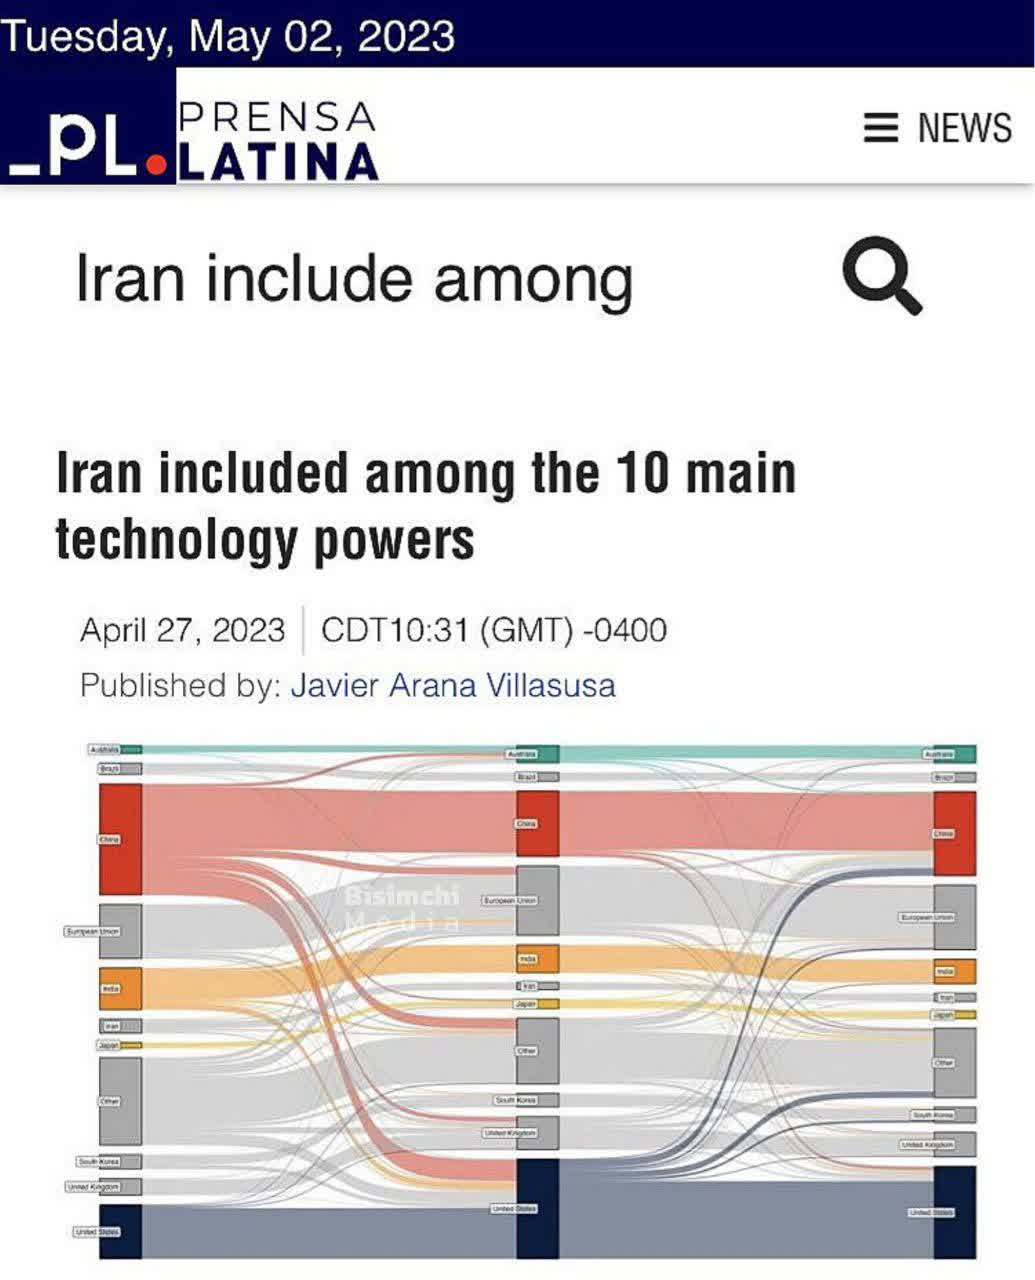 ایران جزو ده قدرت برتر علمی و فناوری